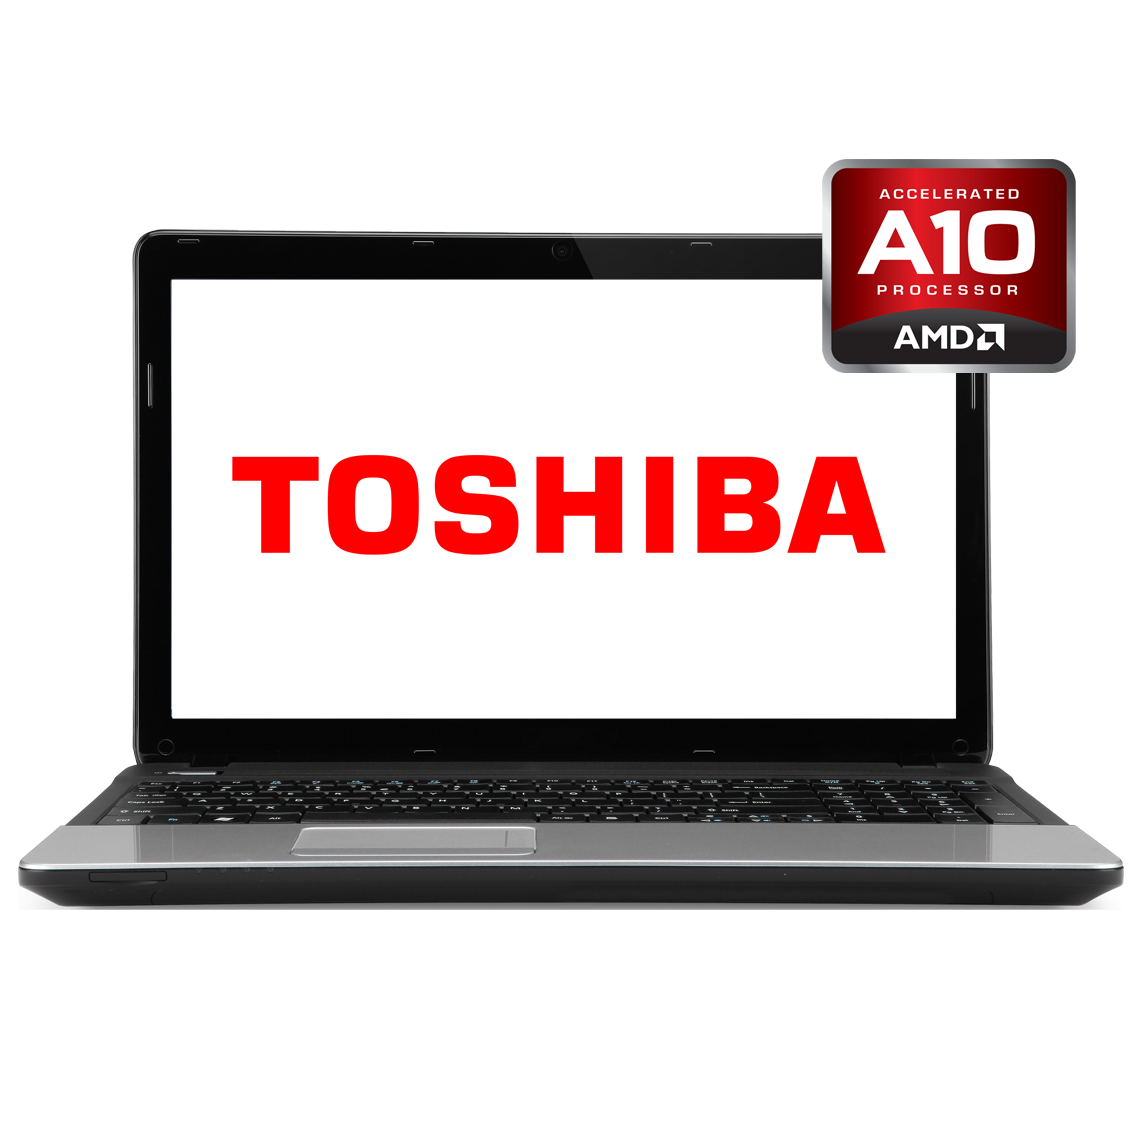 Toshiba - 15 inch AMD A10